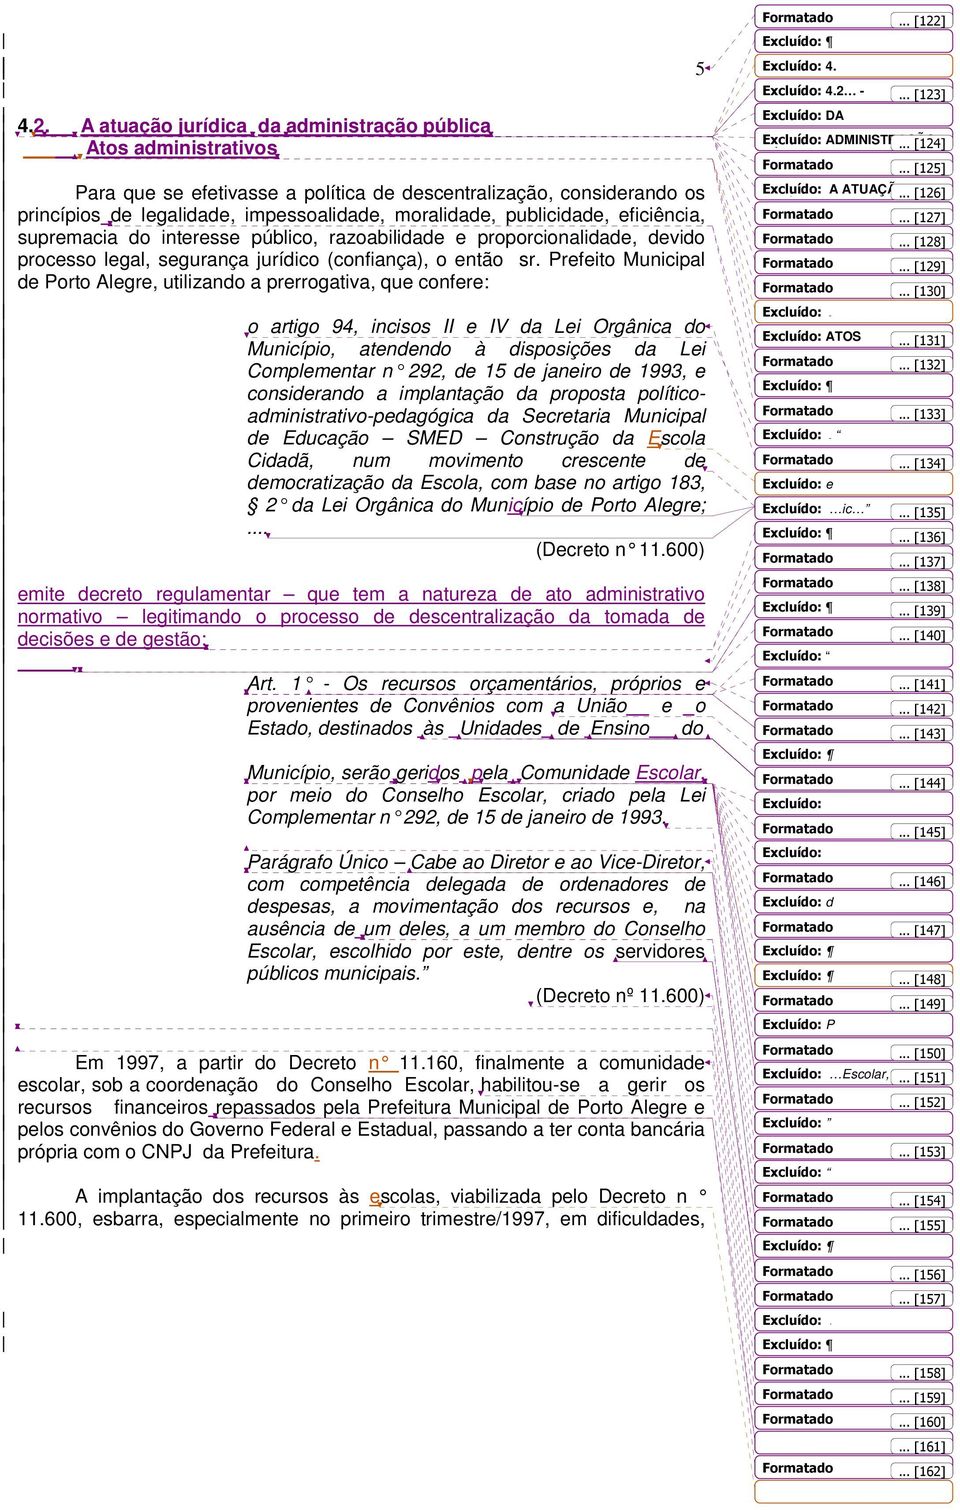 Prefeito Municipal de Porto Alegre, utilizando a prerrogativa, que confere: o artigo 94, incisos II e IV da Lei Orgânica do Município, atendendo à disposições da Lei Complementar n 292, de 15 de